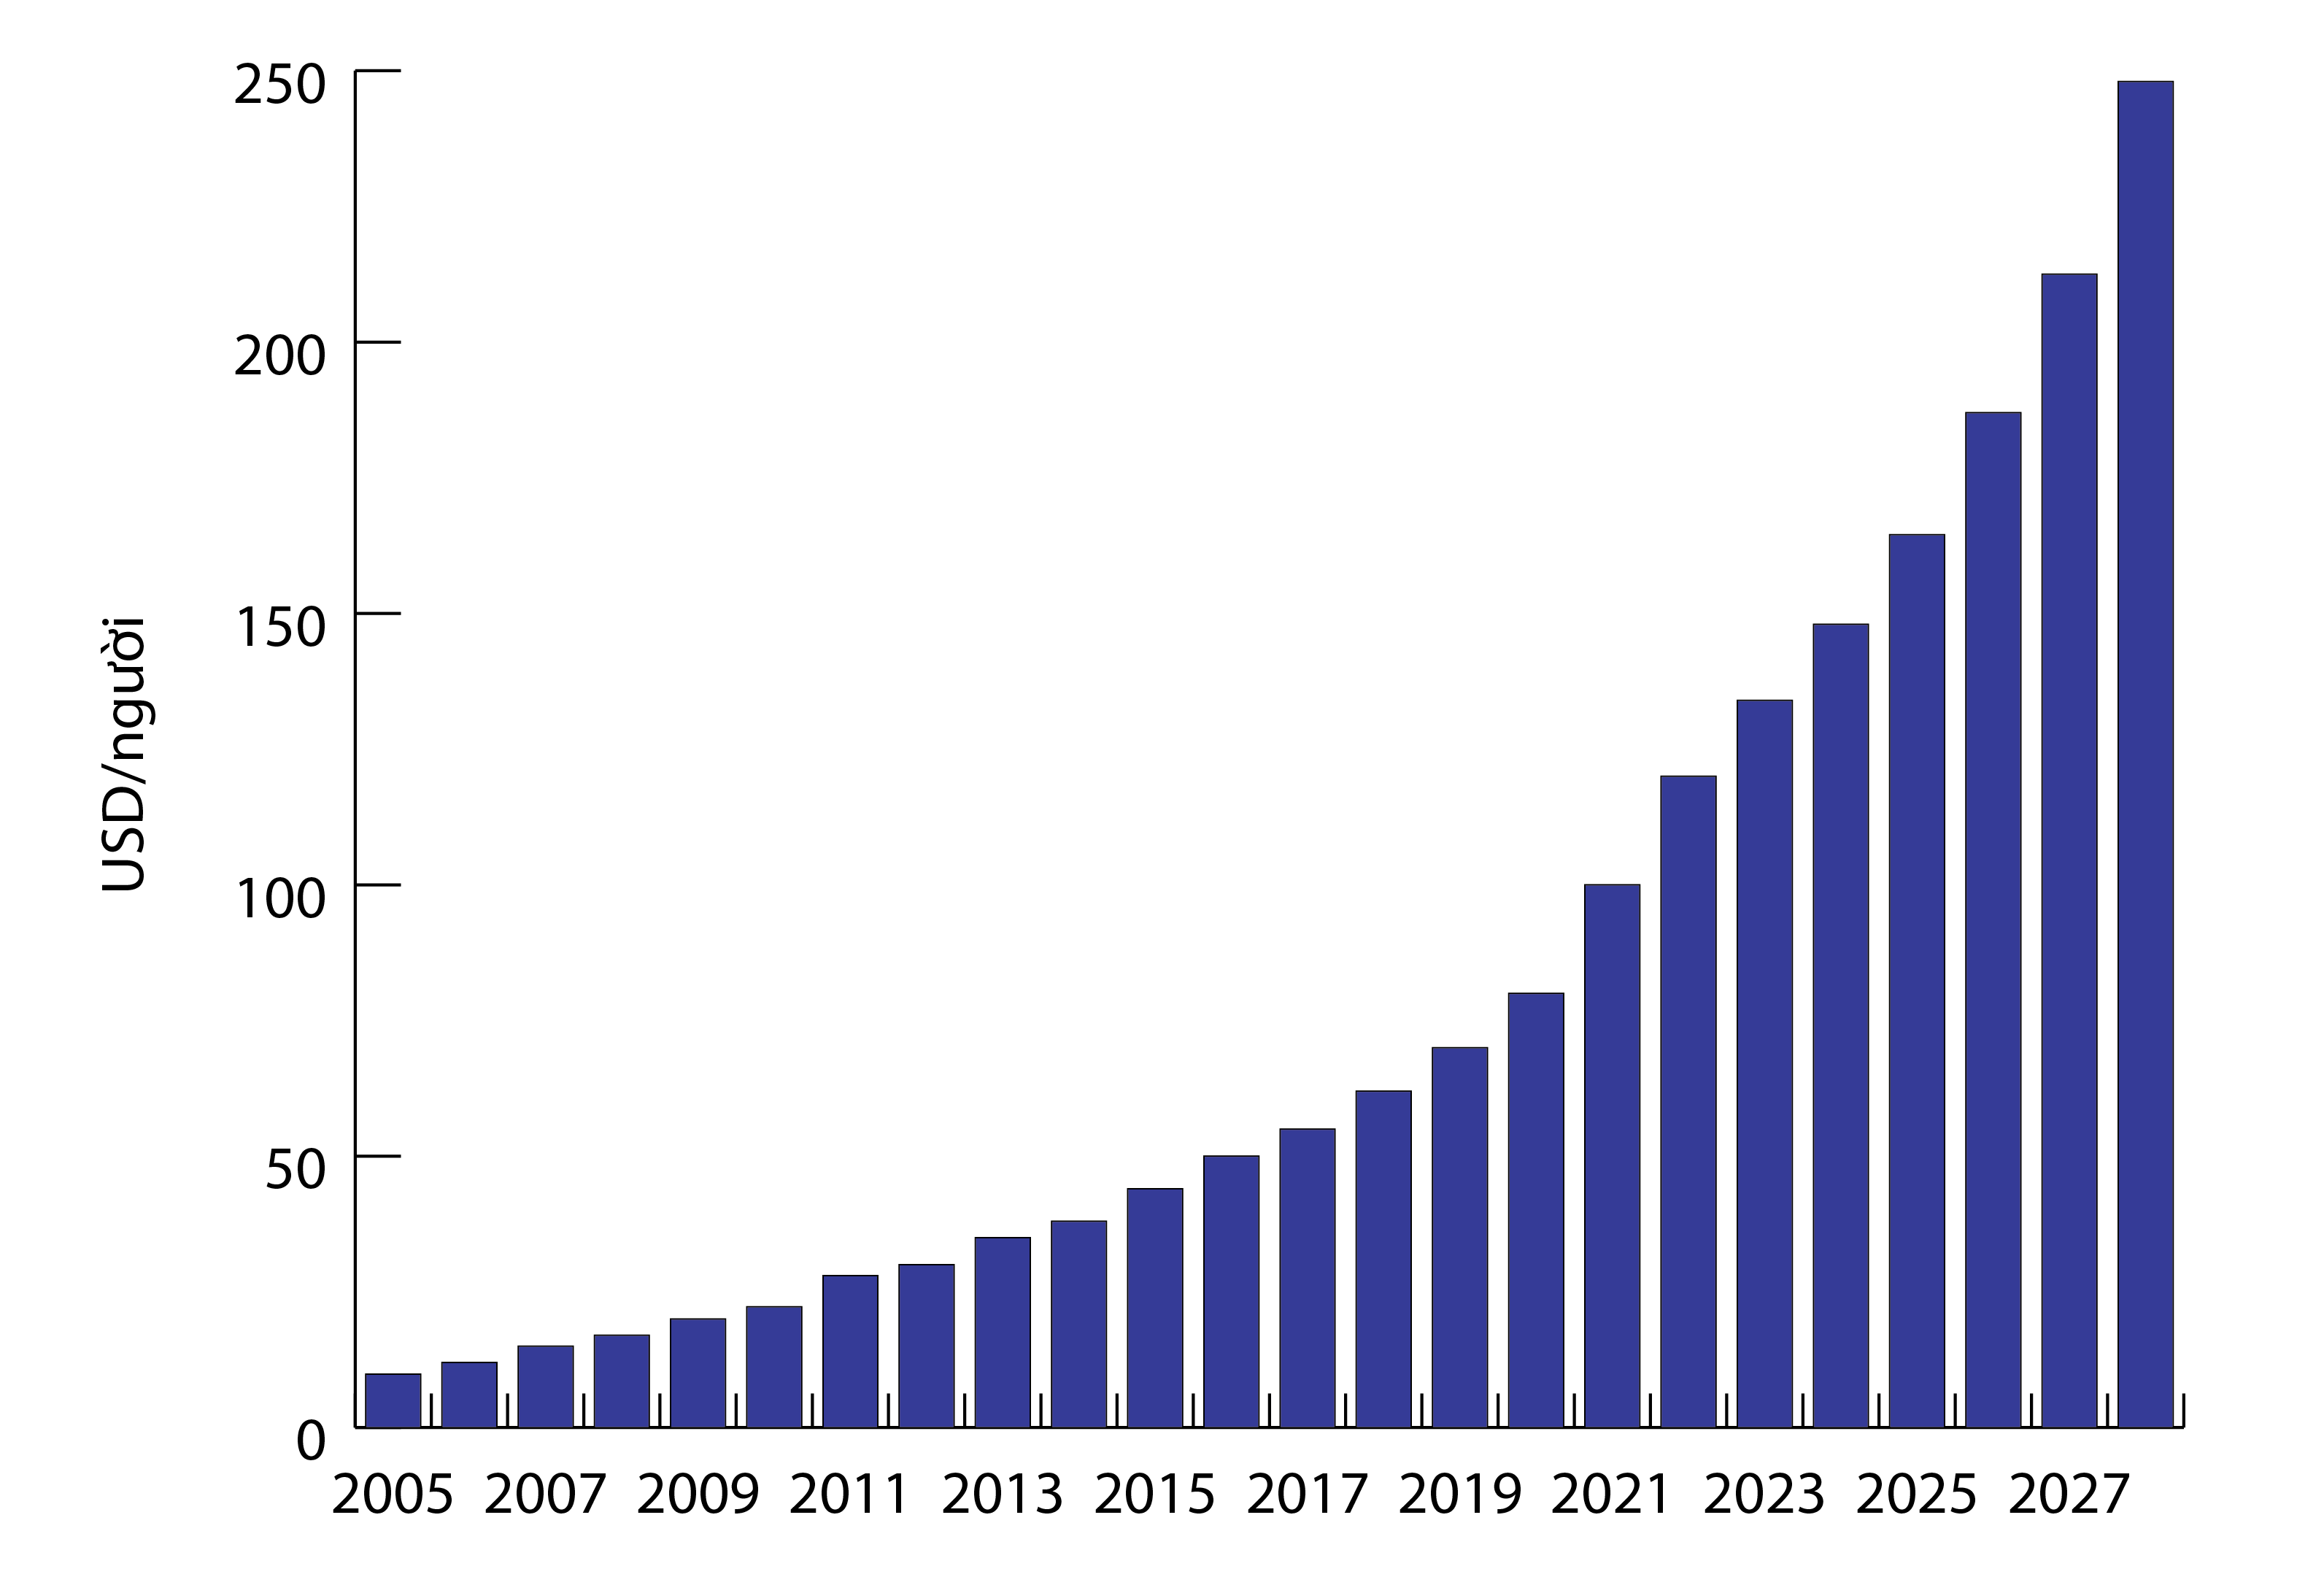 Chi tiêu tiền thuốc bình quân đầu người tại Việt Nam từ năm 2005 và dự báo đến năm 2027 